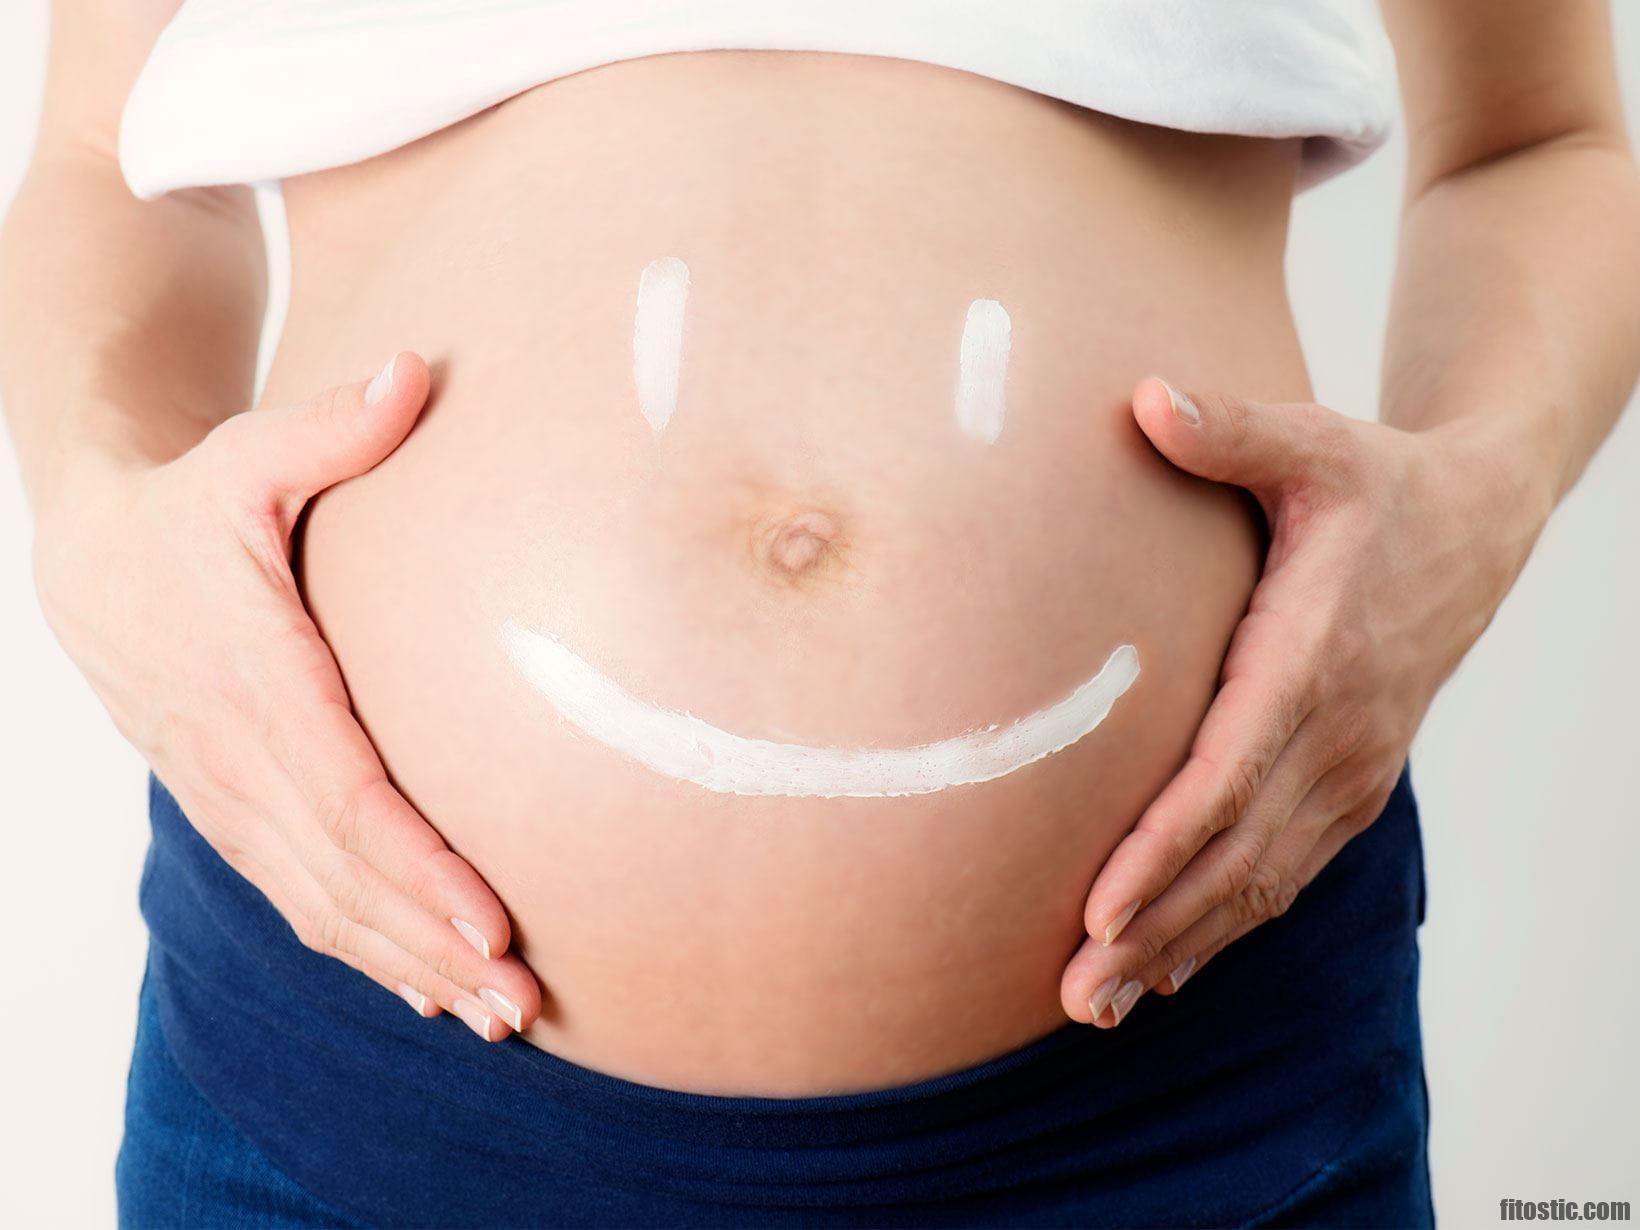 La chirurgie esthétique pendant la grossesse est-elle sans danger ?